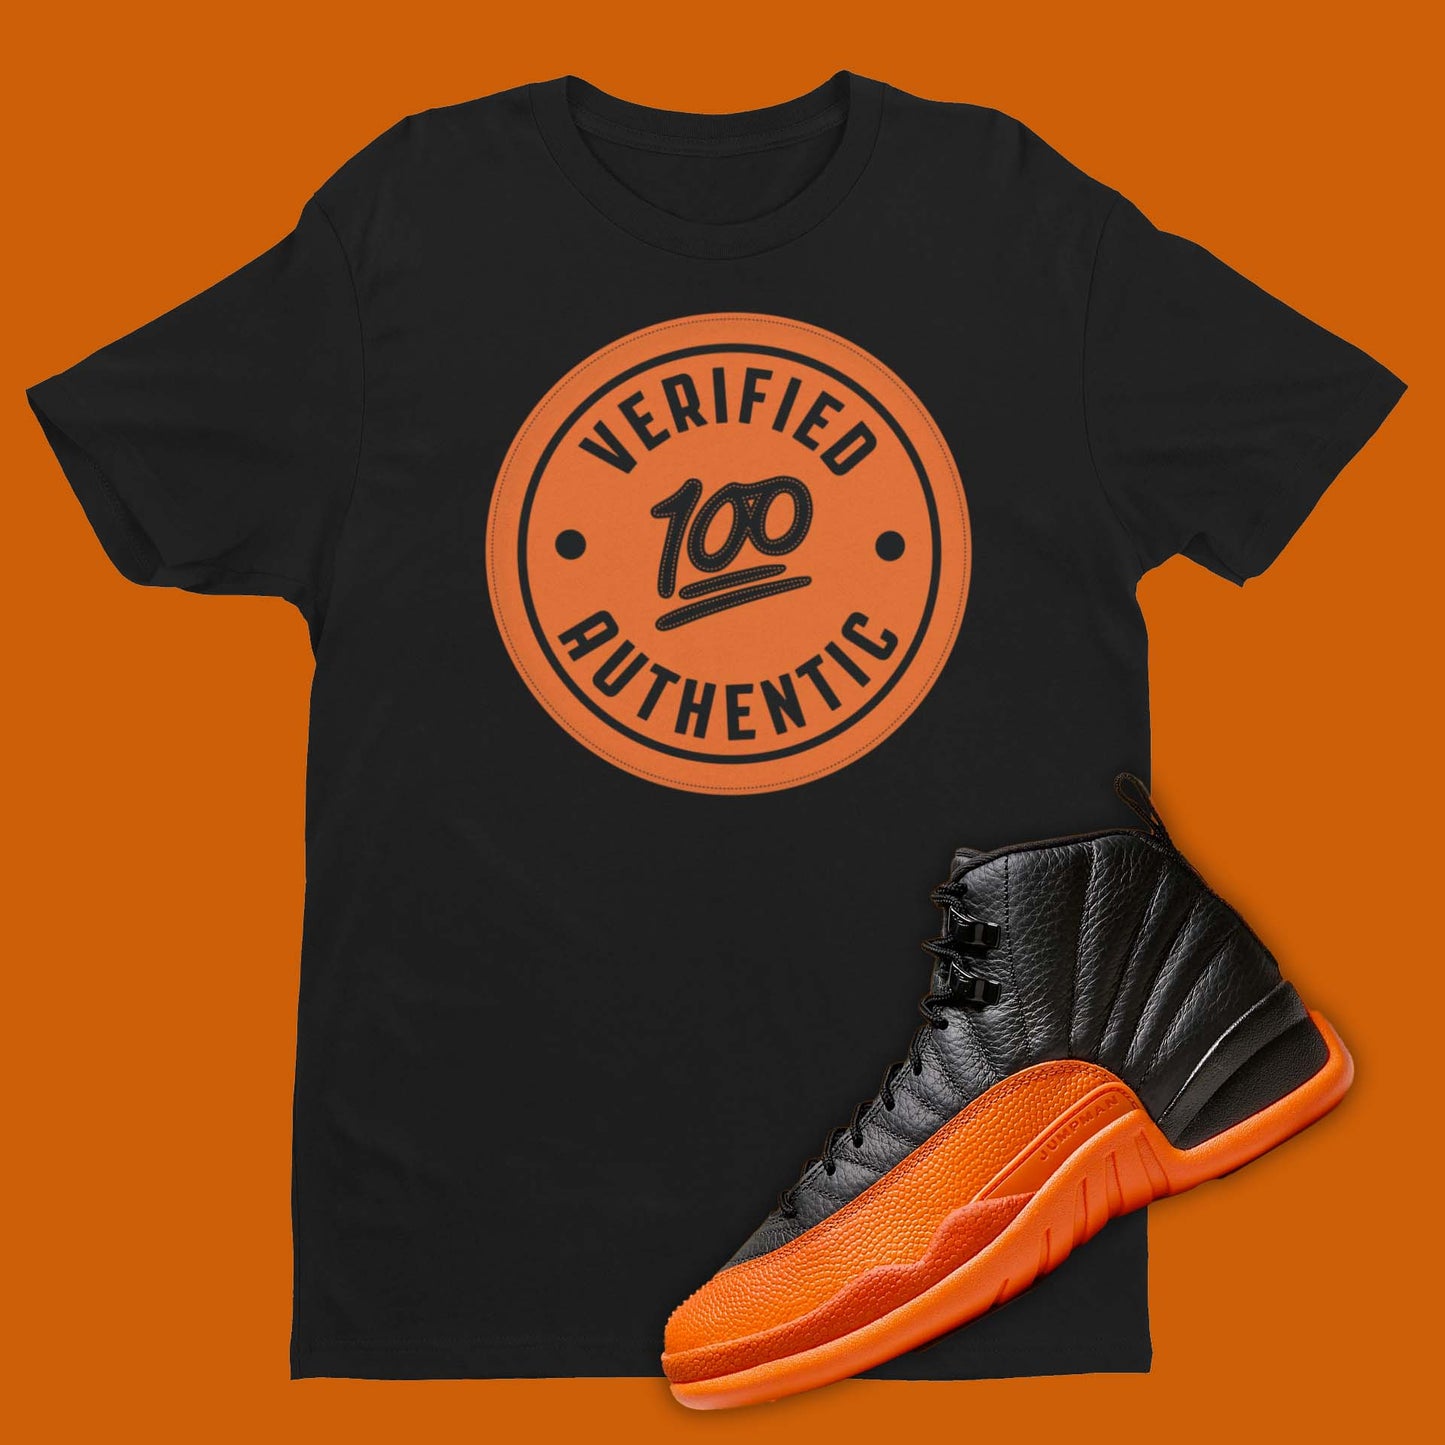 Air Jordan 12 Brilliant Orange matching shirt for sneakerheads